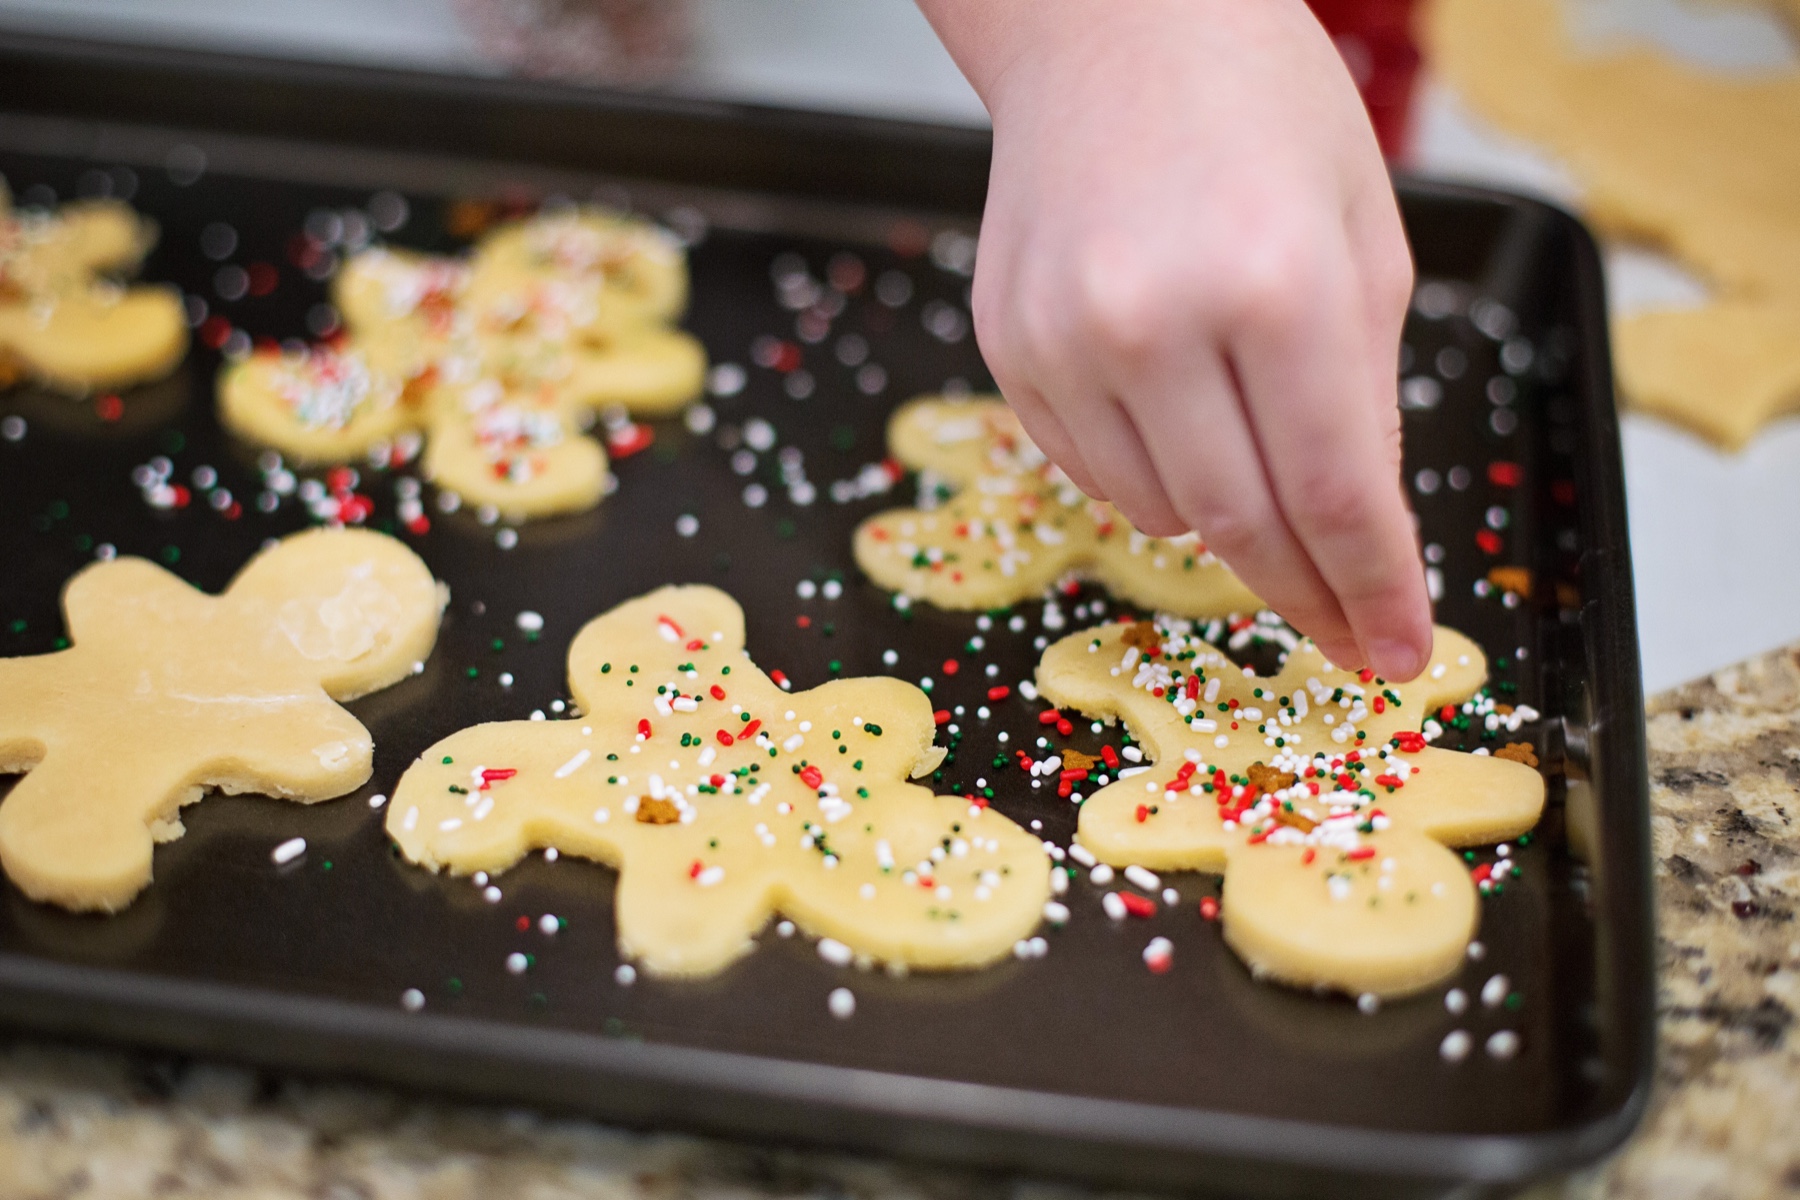 baking-christmas-cookies-12190-c06be3.jpg